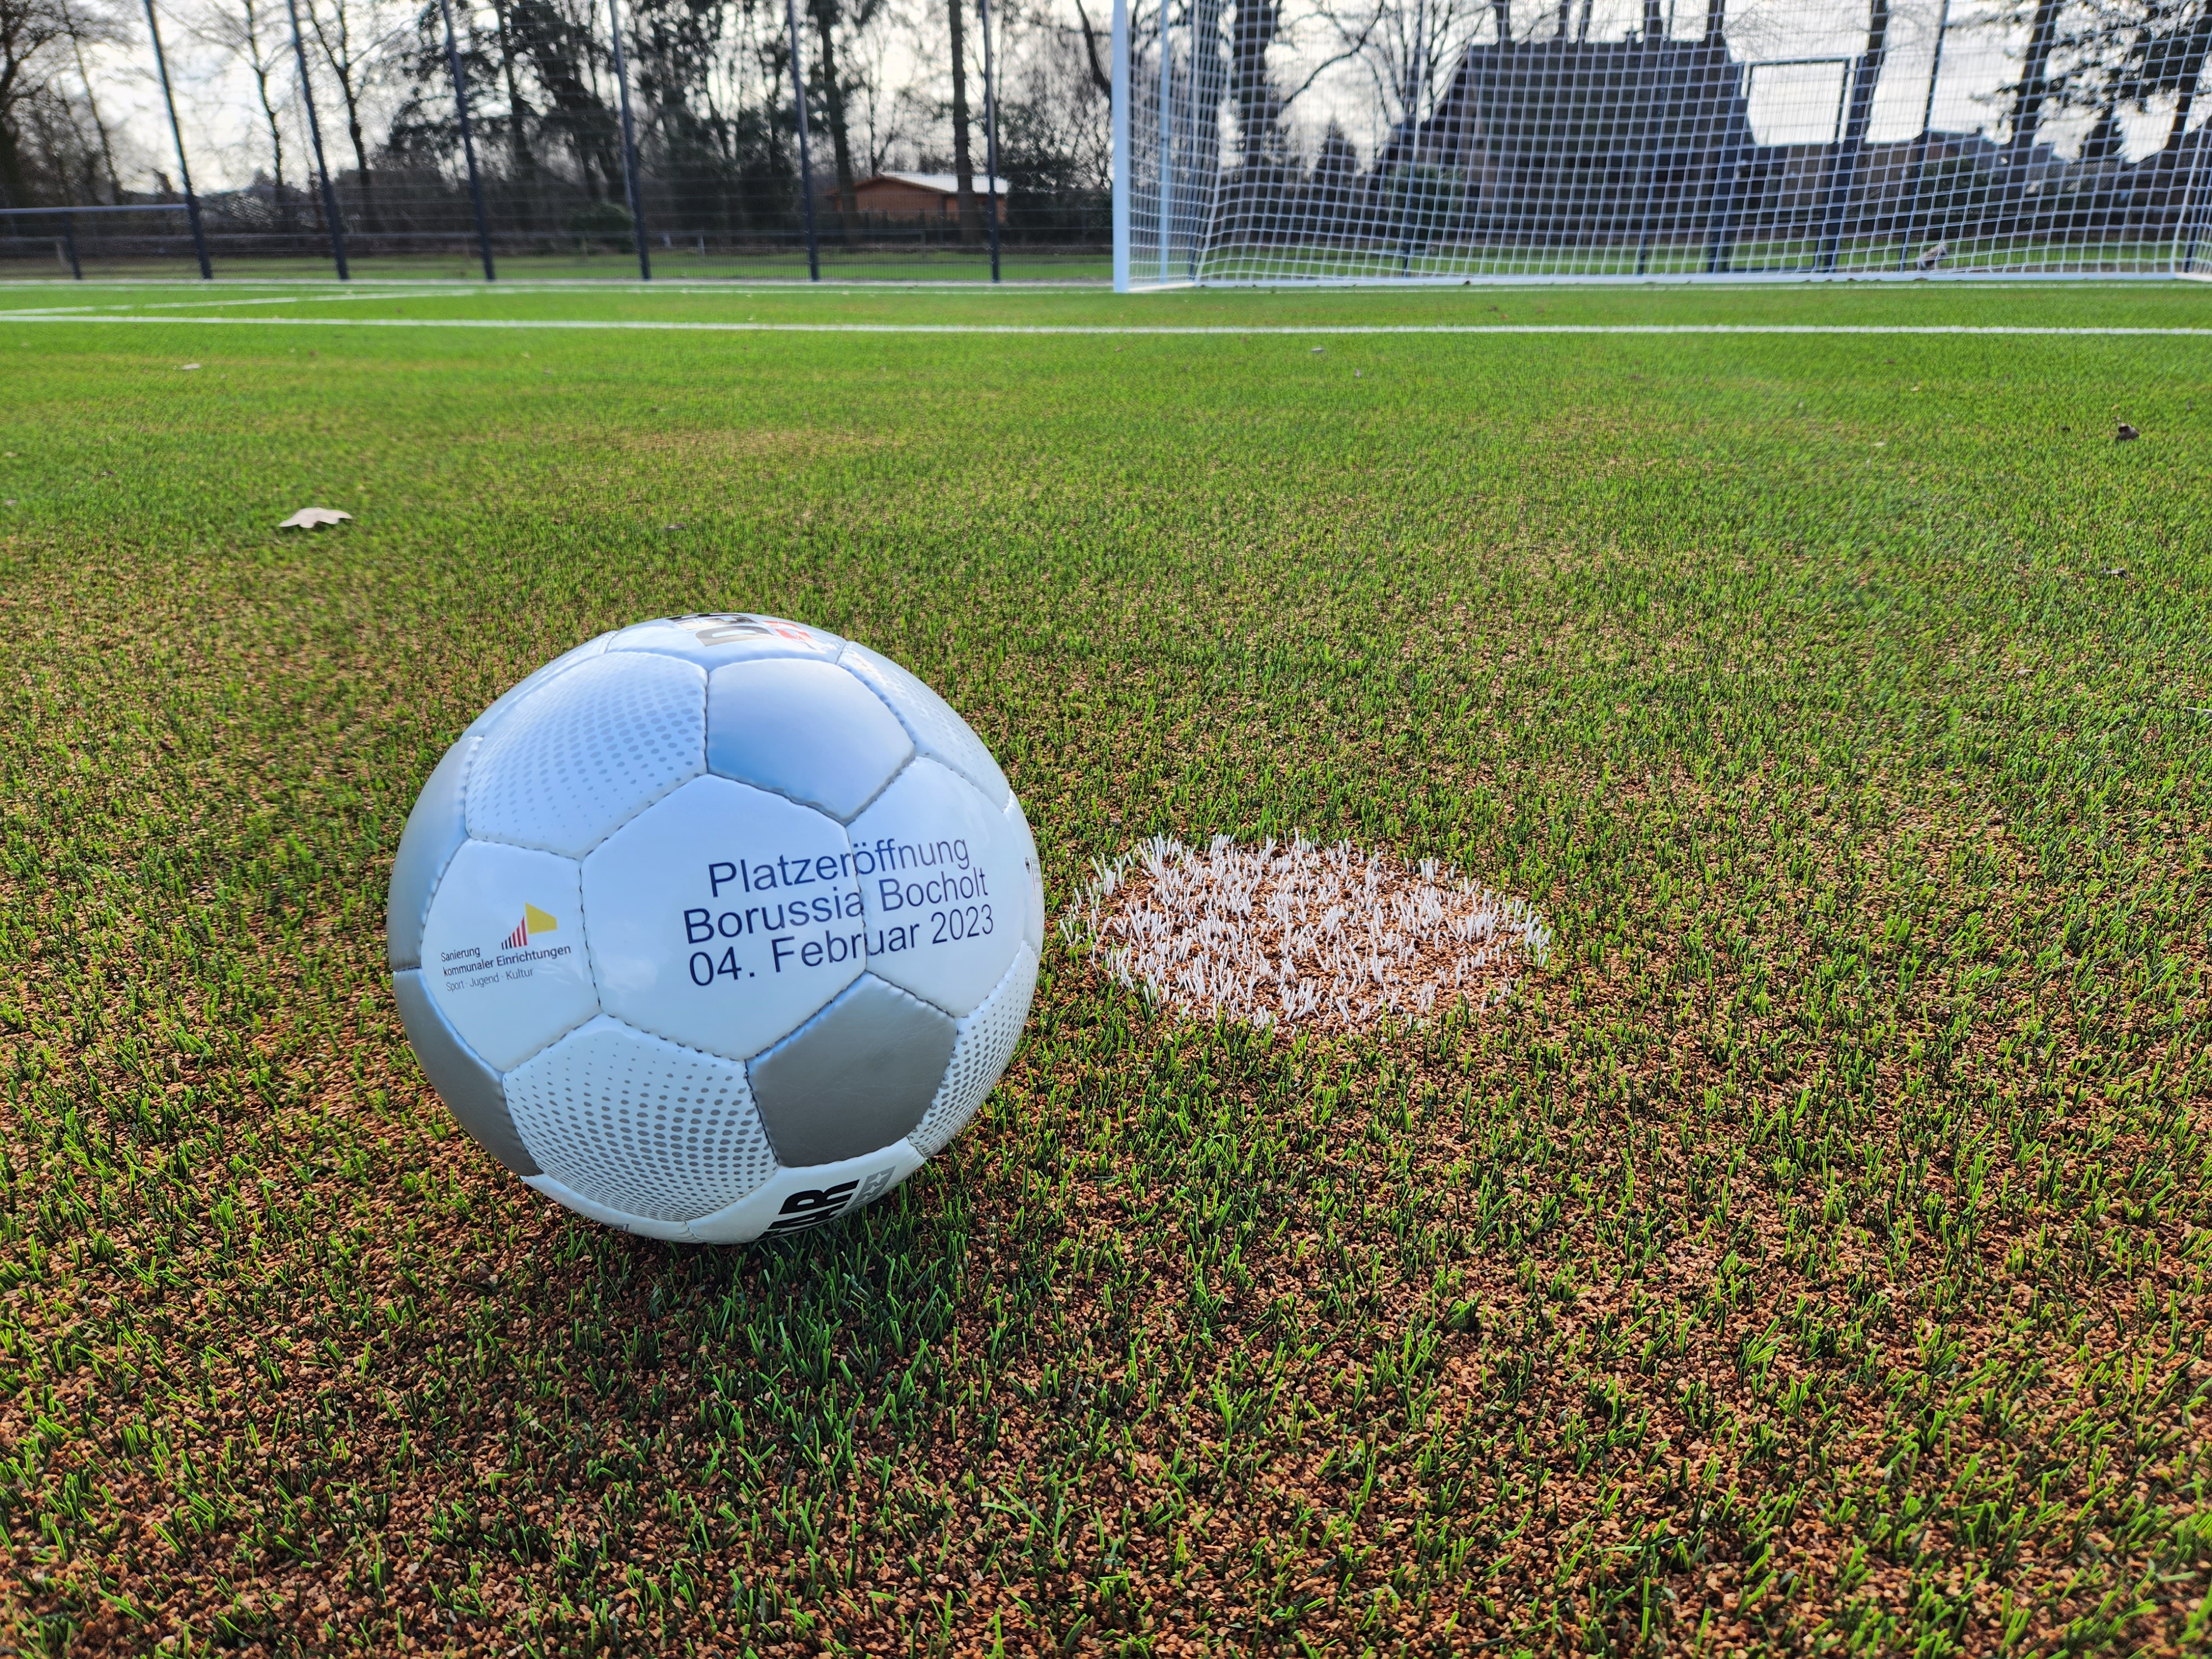 Auf dem Foto ist ein Fußball auf einem Kunstrasenplatz zu sehen.